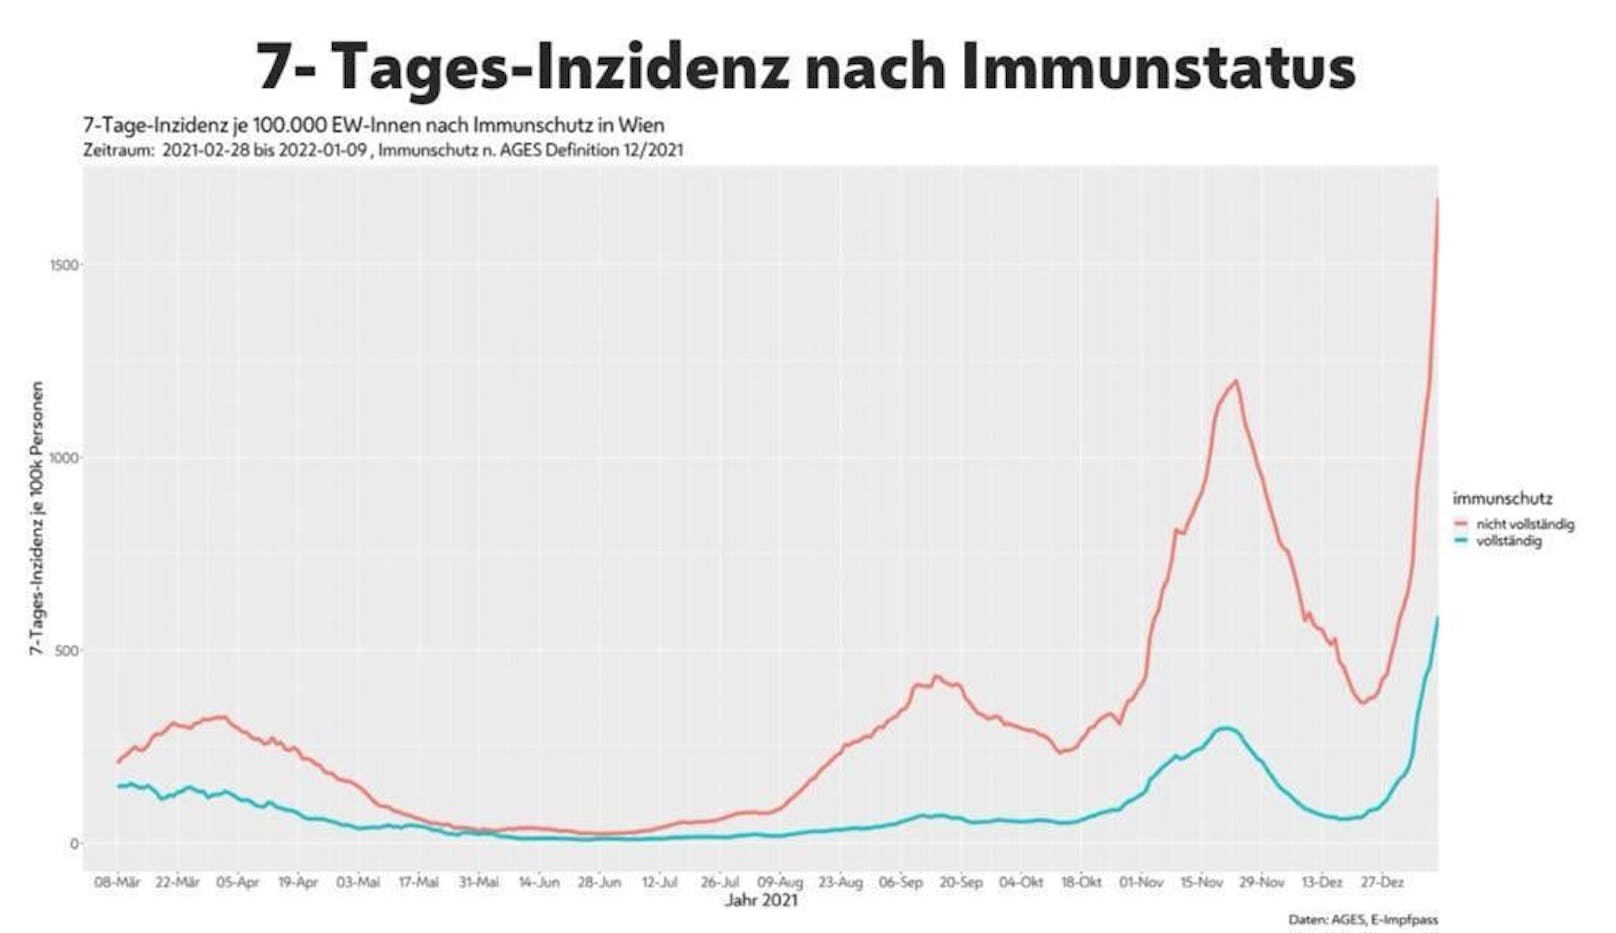 Inzidenz nach Impfstatus: Un- bzw. nicht vollständig Geimpfte in rot, vollständig Geimpfte in türkis.